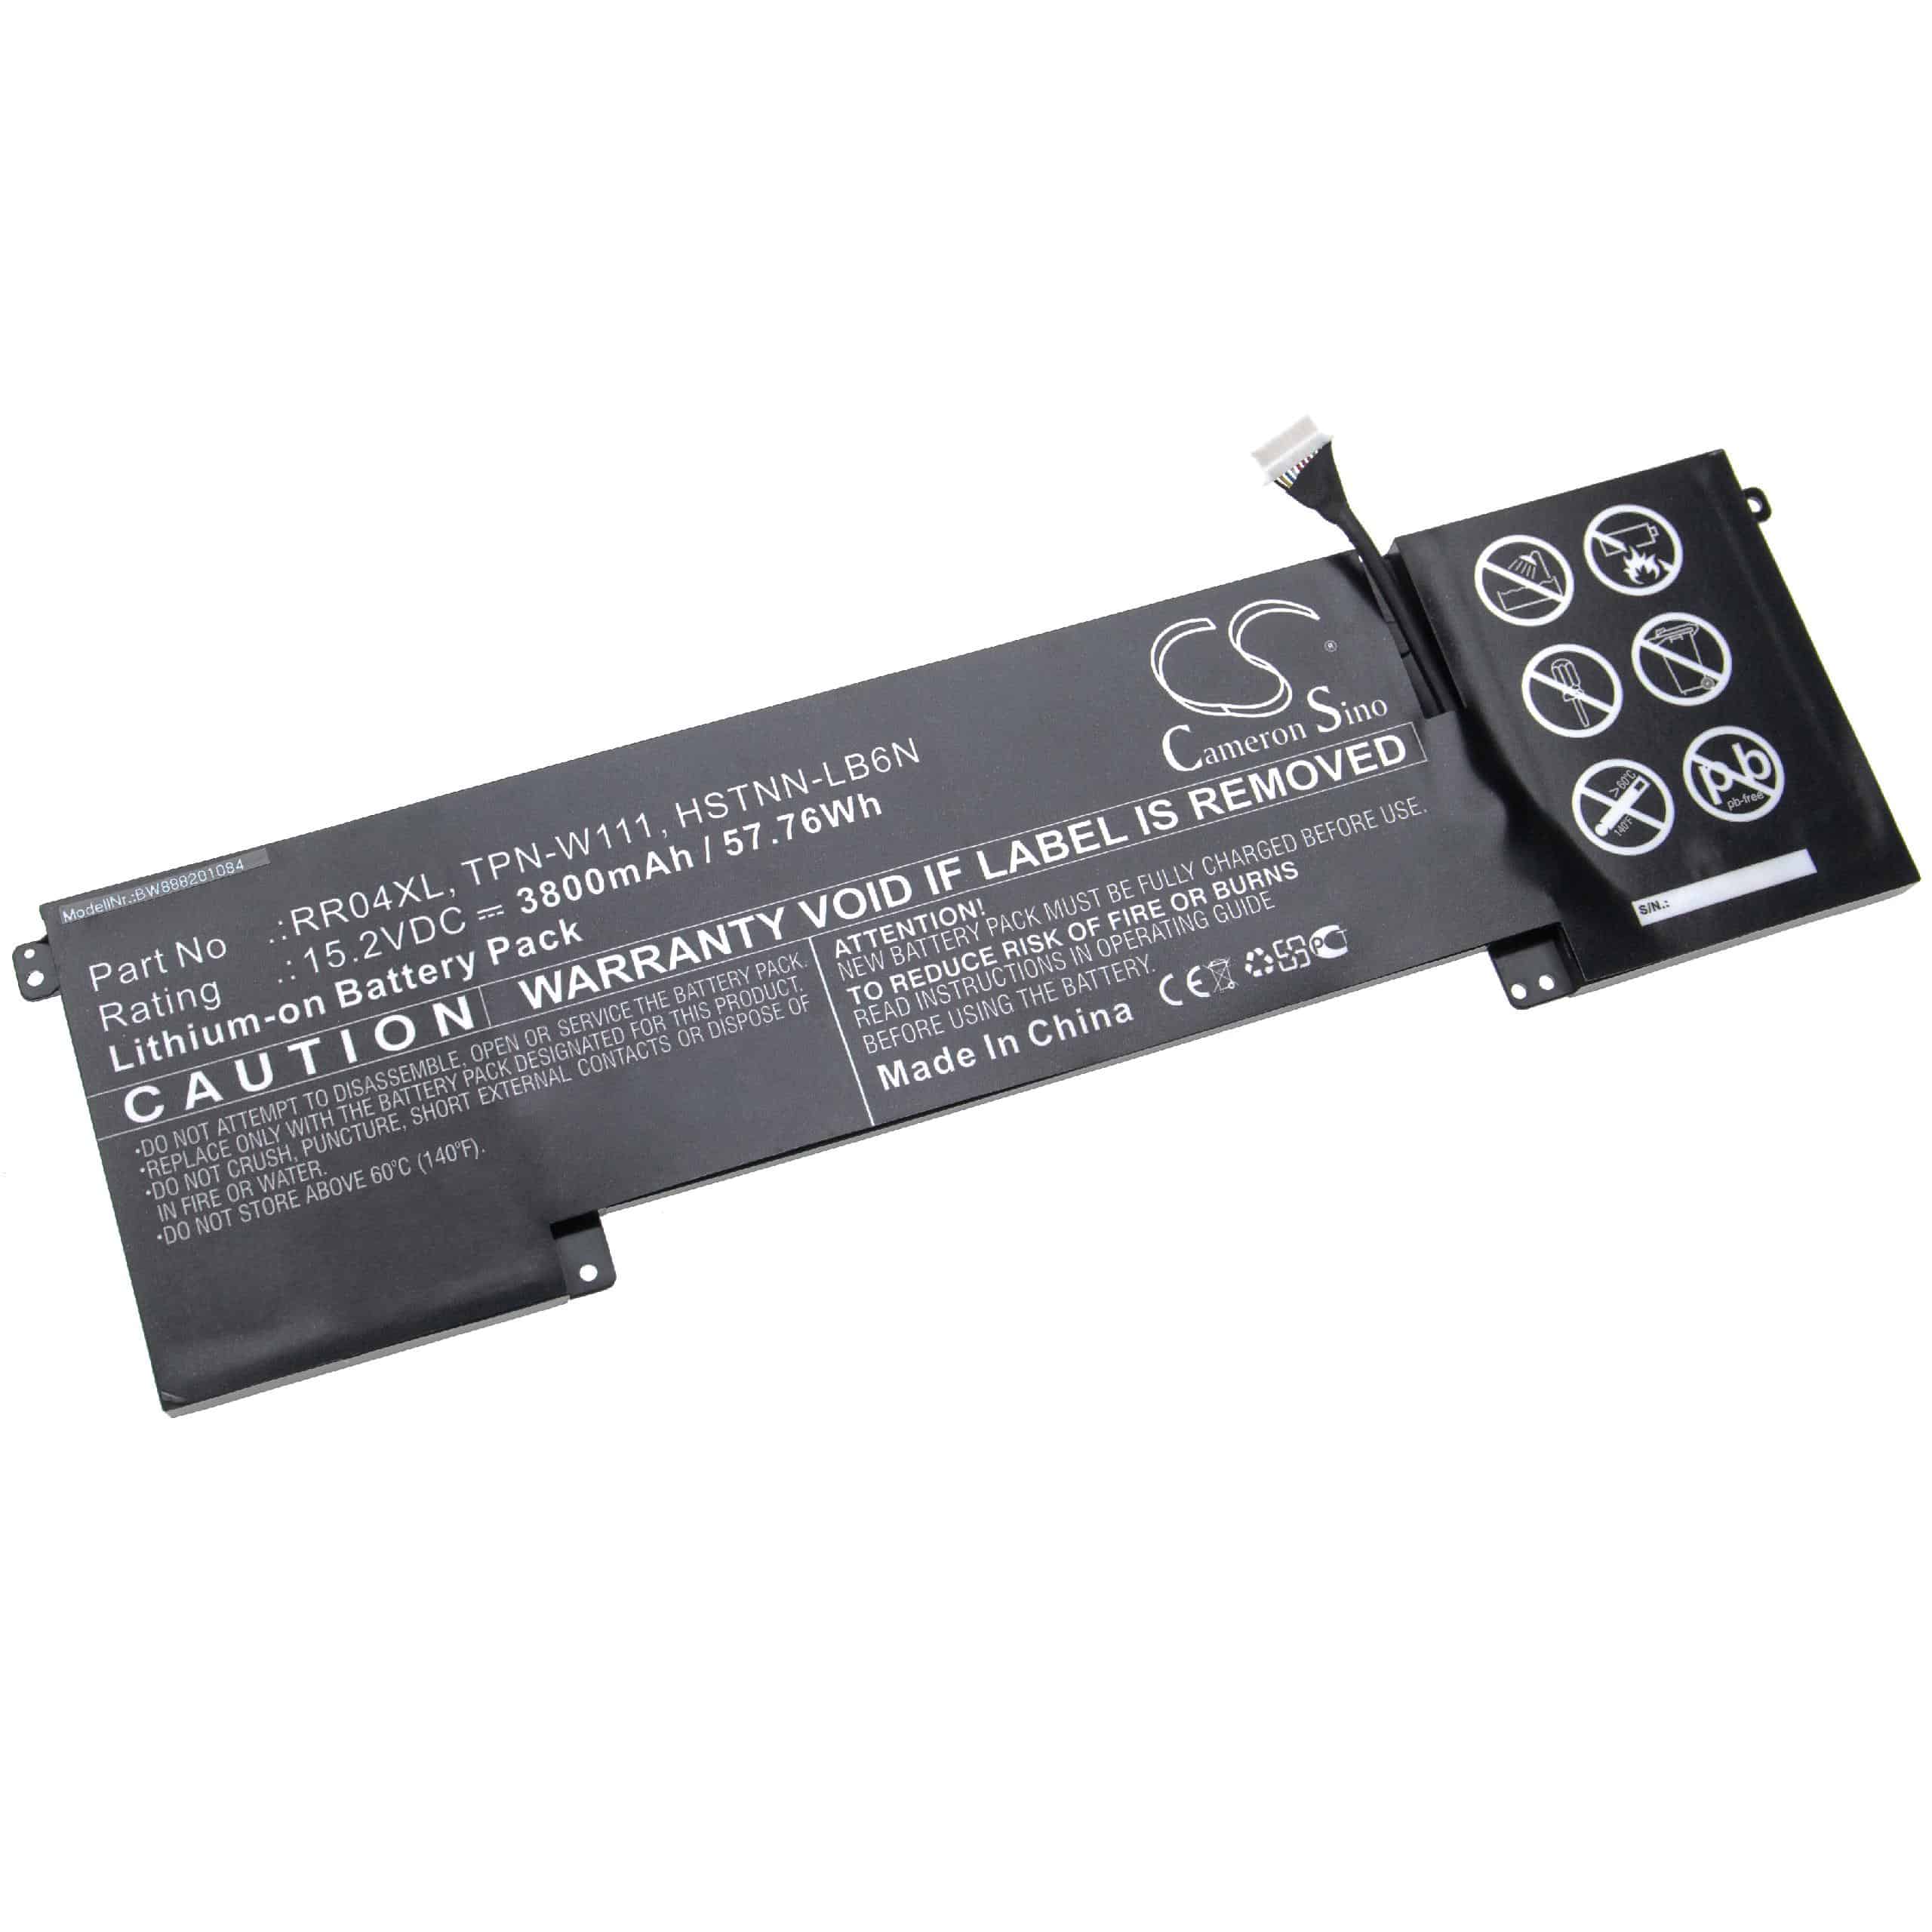 Batterie remplace HP 778961-421, 778978-005, 778951-421 pour ordinateur portable - 3800mAh 15,2V Li-ion, noir